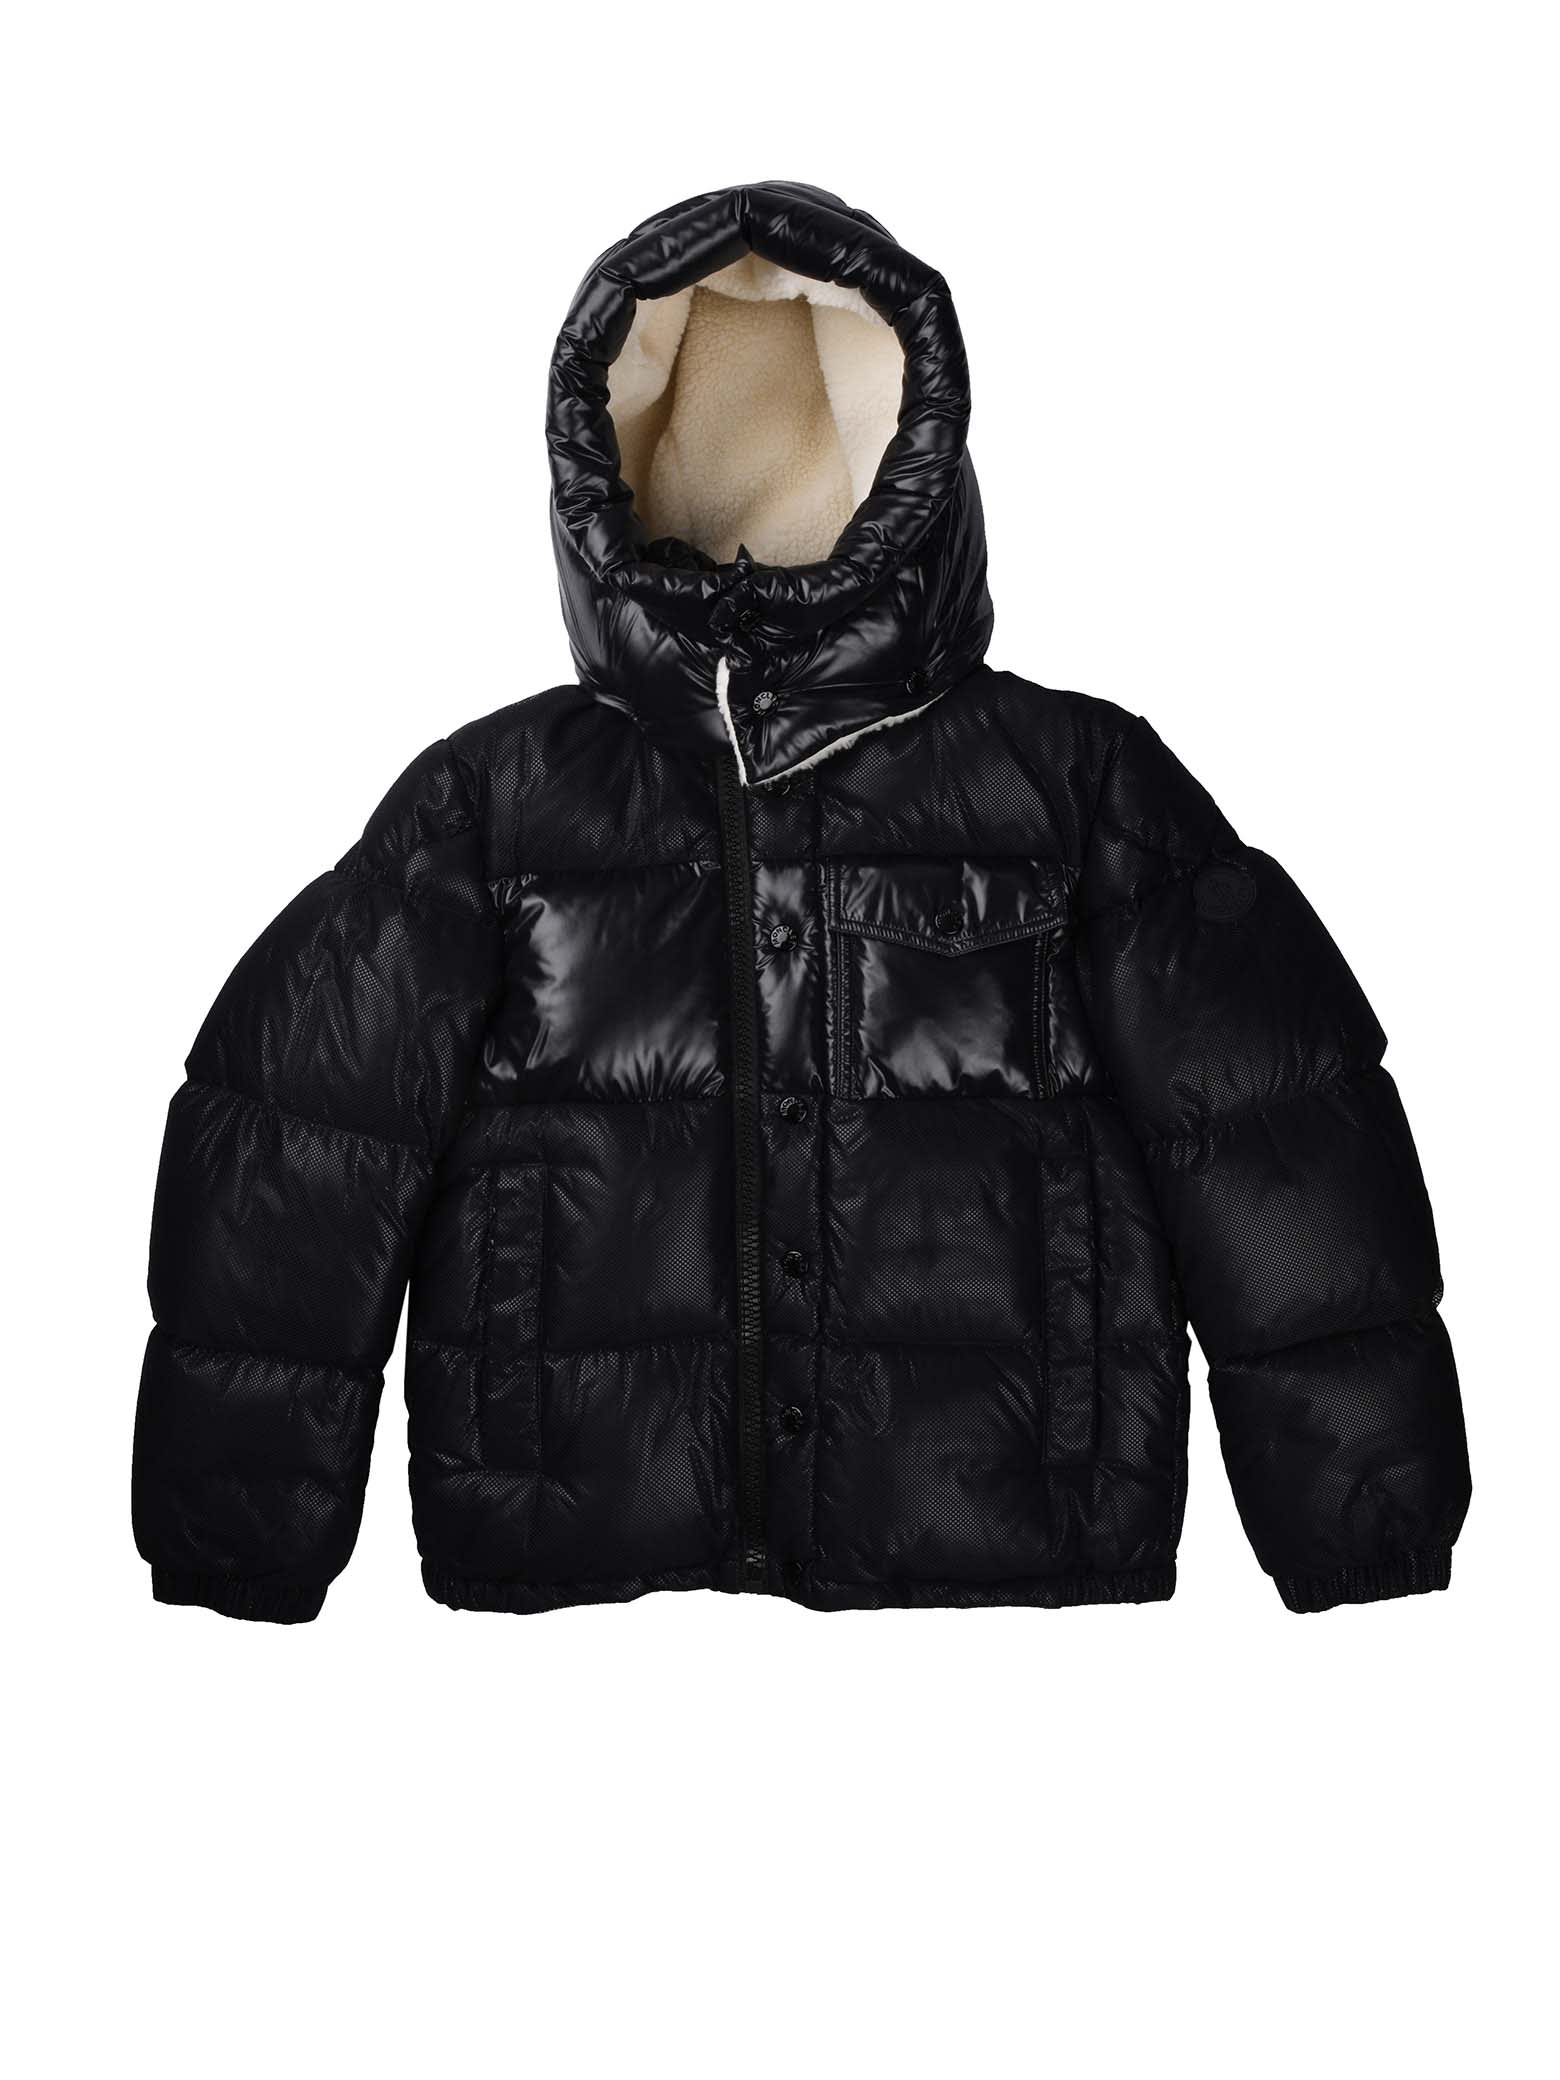 Moncler Demir Black Jacket With Hood